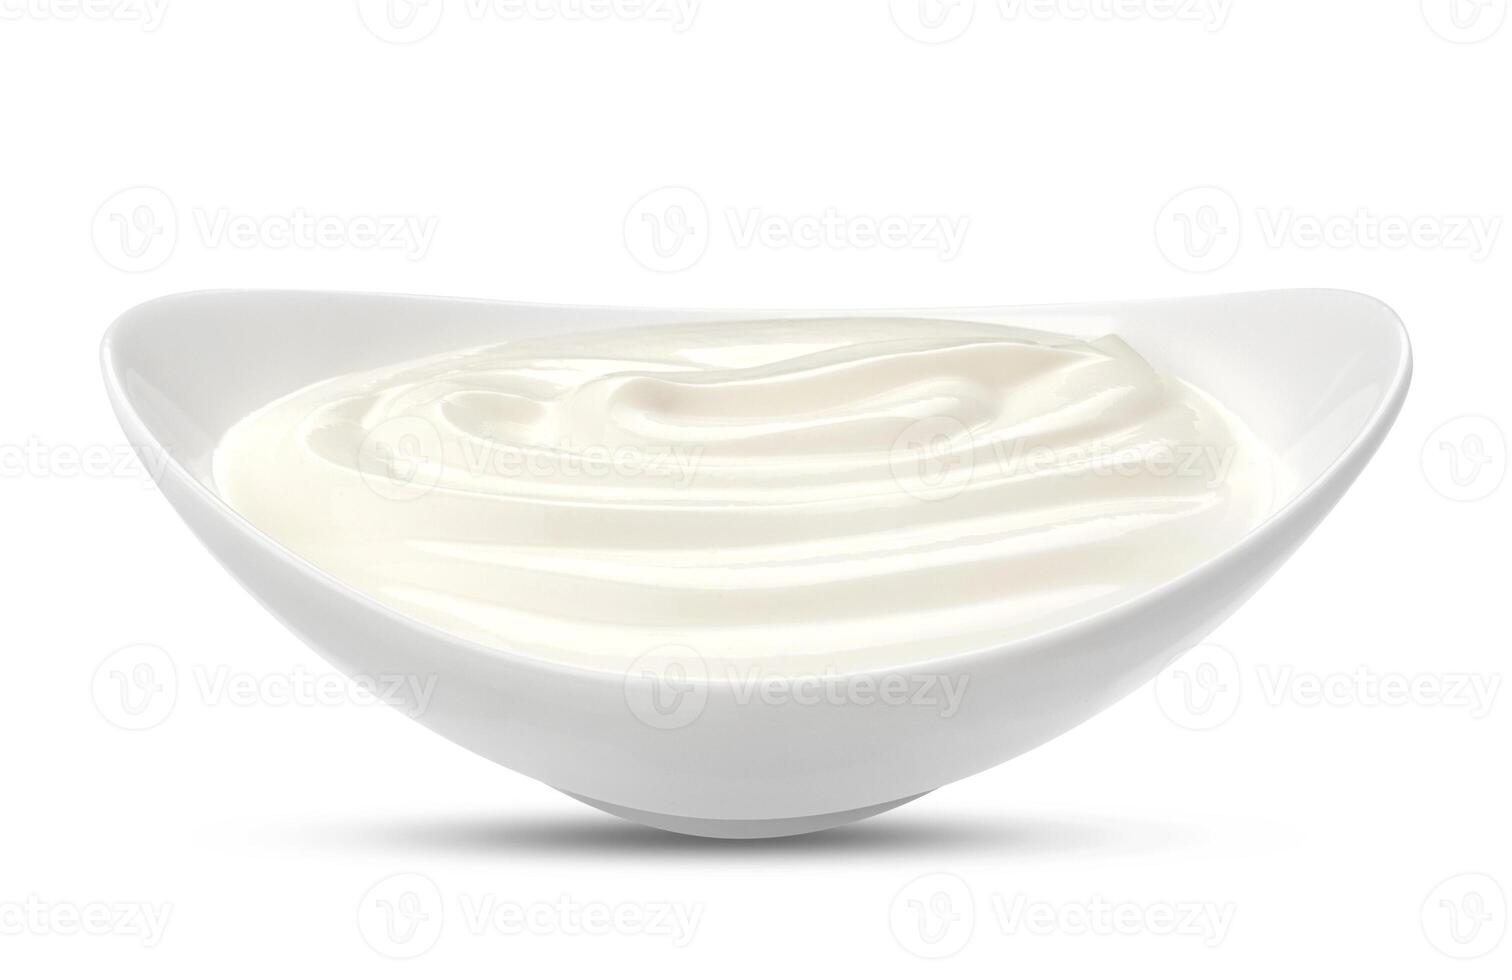 grego iogurte isolado em branco foto